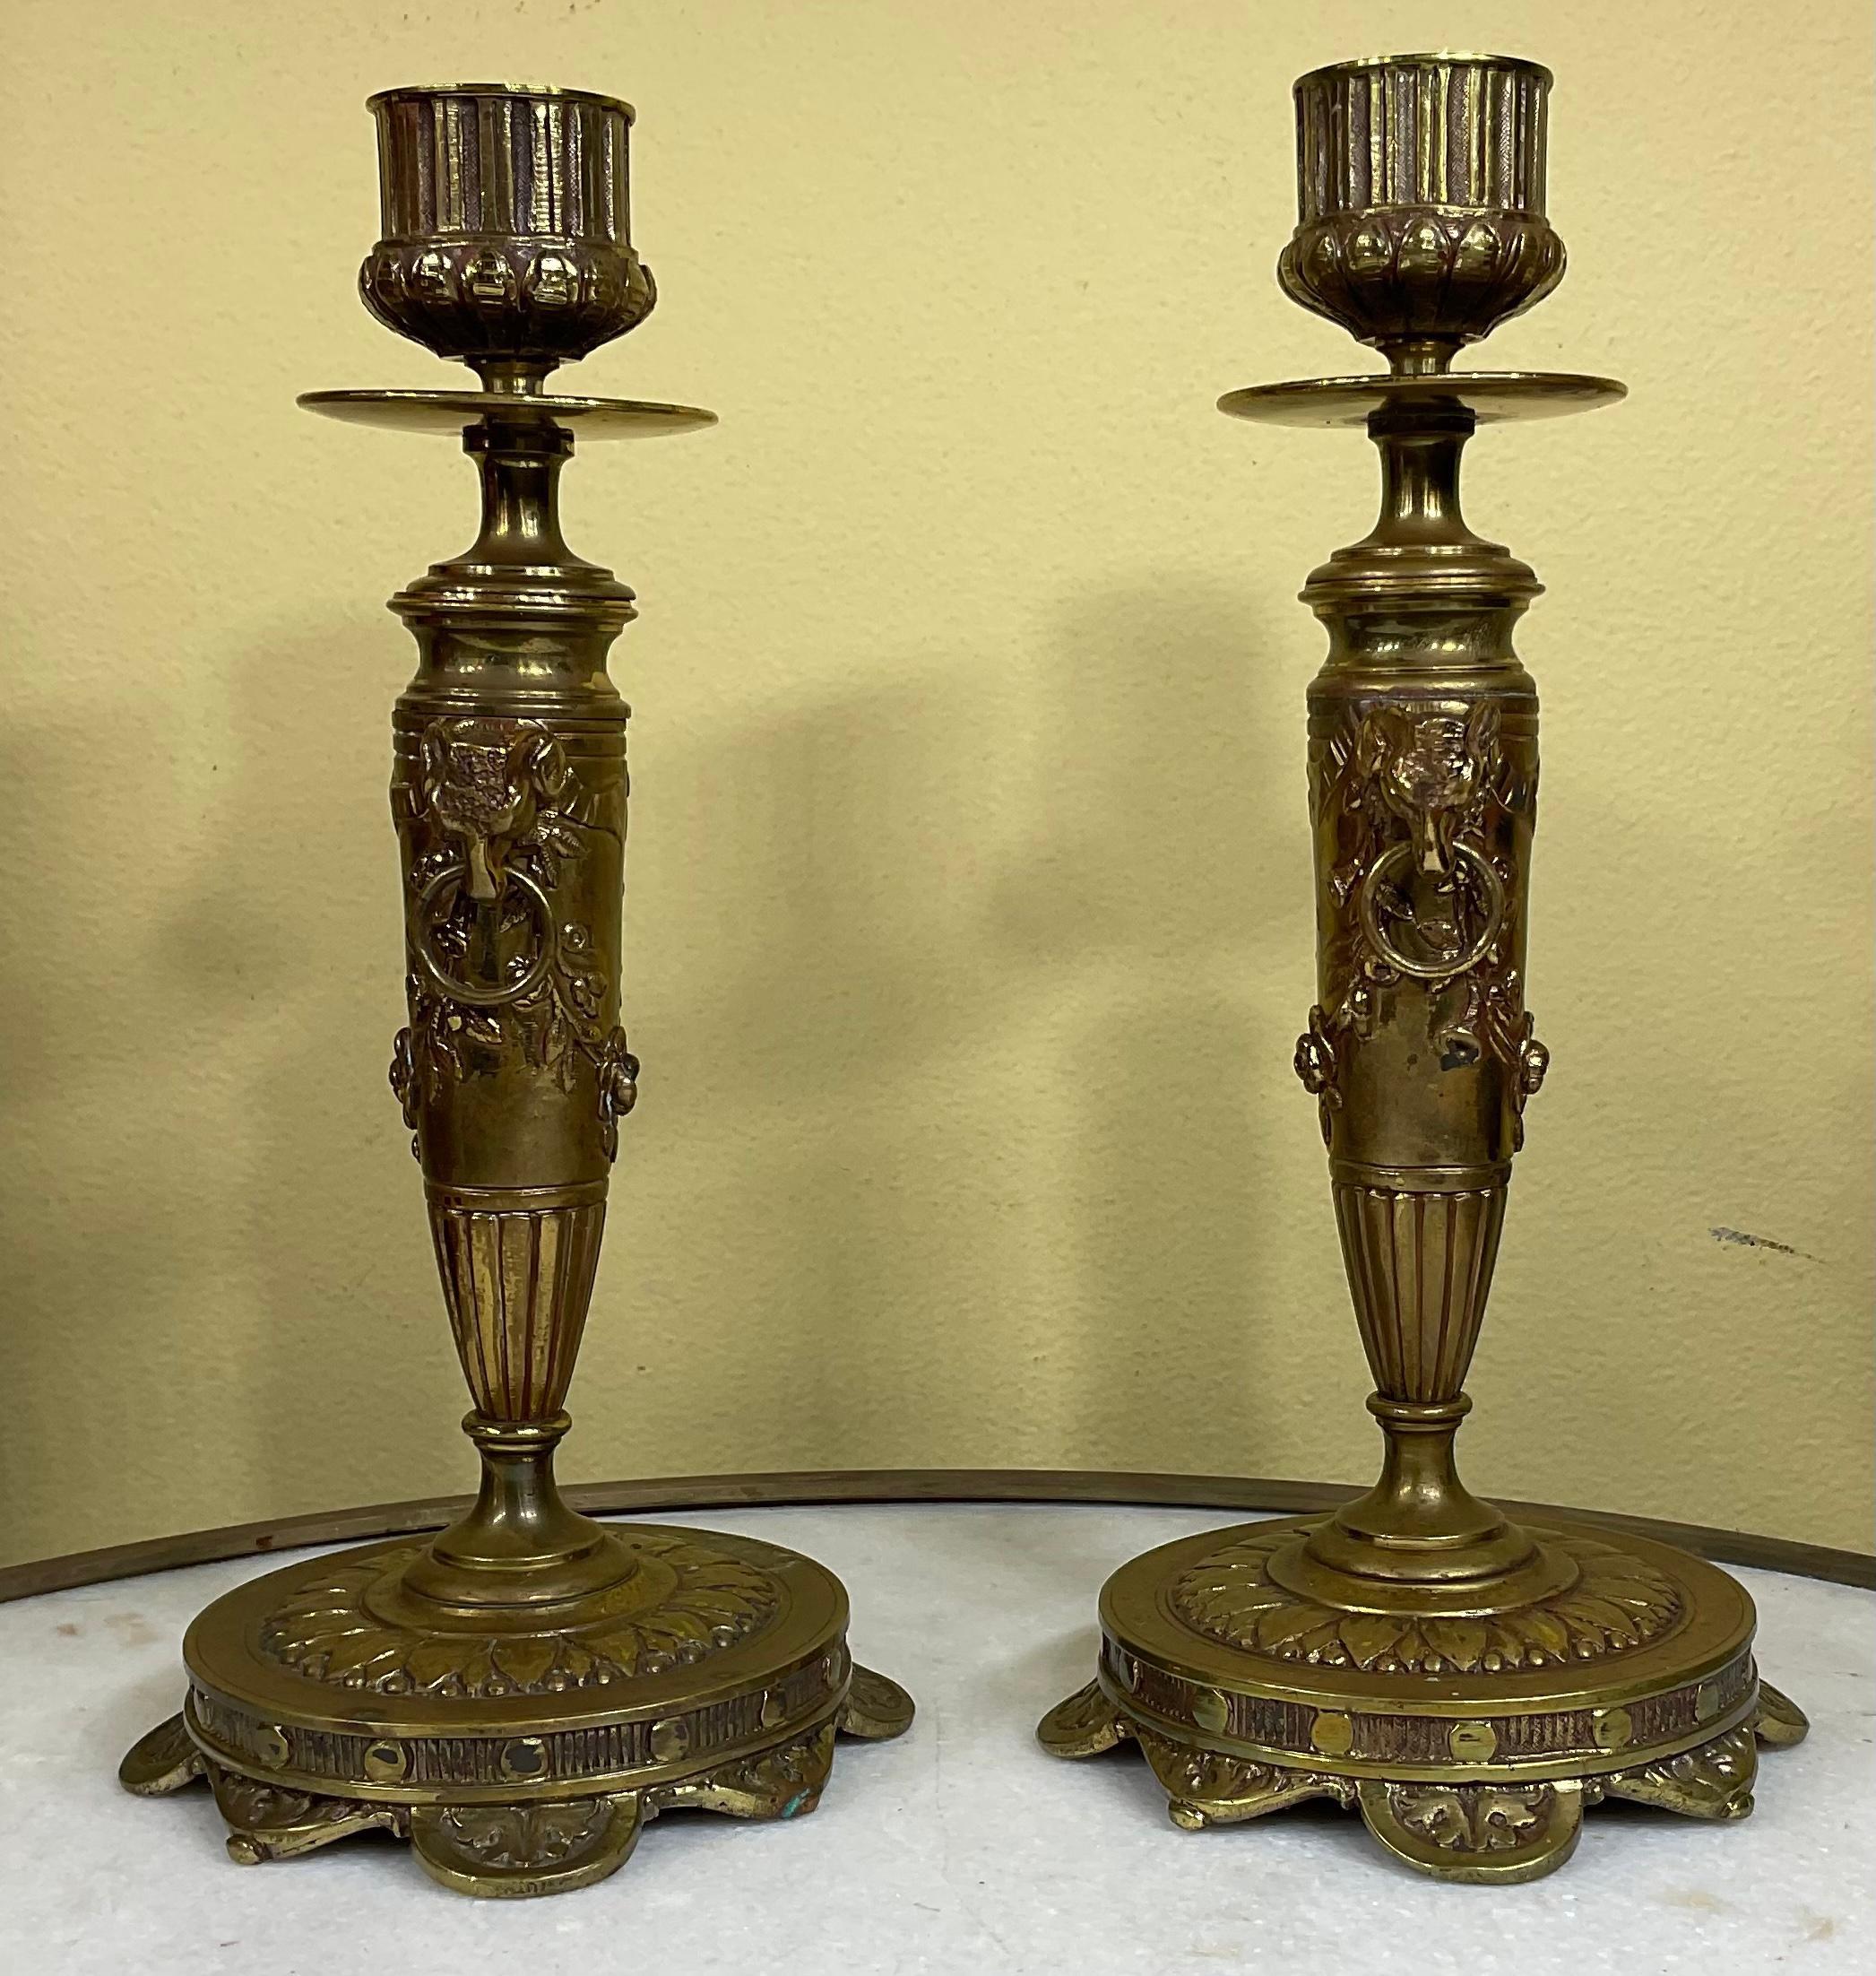 Ein ungewöhnliches Paar Französisch graviert niedrige Leuchter mit und fein eingeschnitten und dekoriert Basis, die Mitte hat zwei Widderkopf, und florale Motiv. original Versilberung unter der Basis.
Ausgezeichnetes Kunstobjekt für die